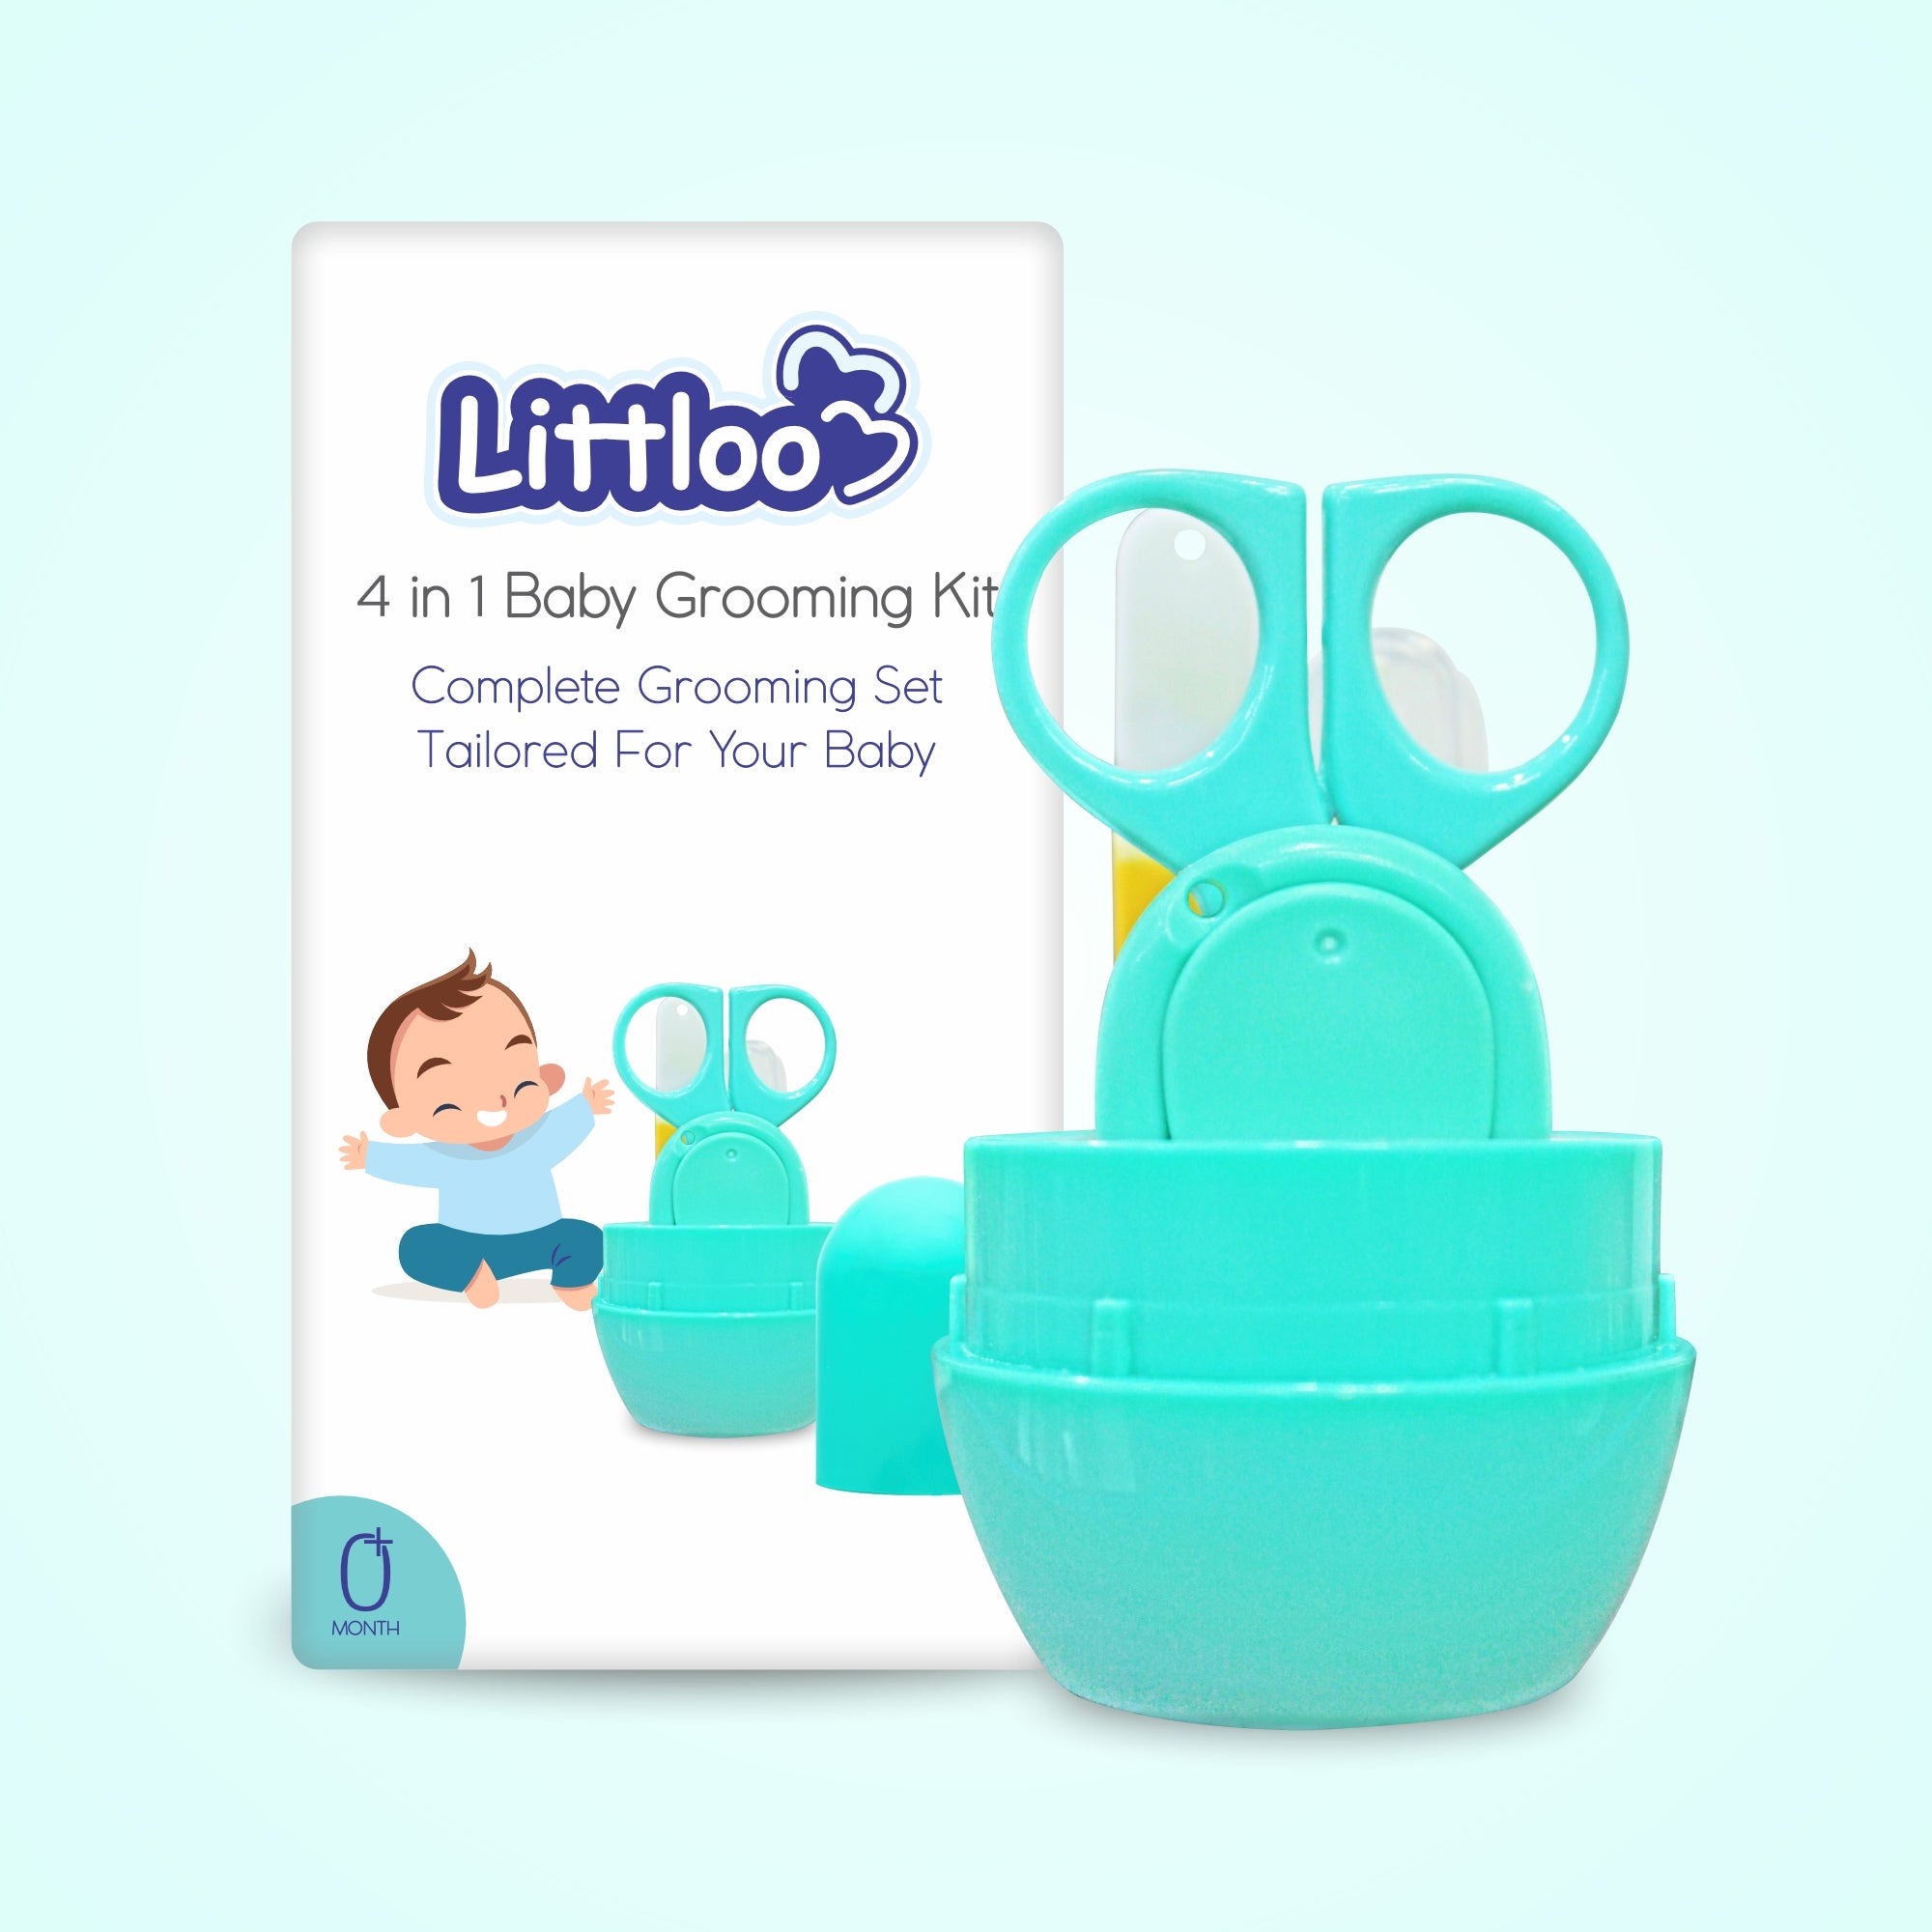 Littloo 4 in 1 Baby Grooming Kit - Littloo